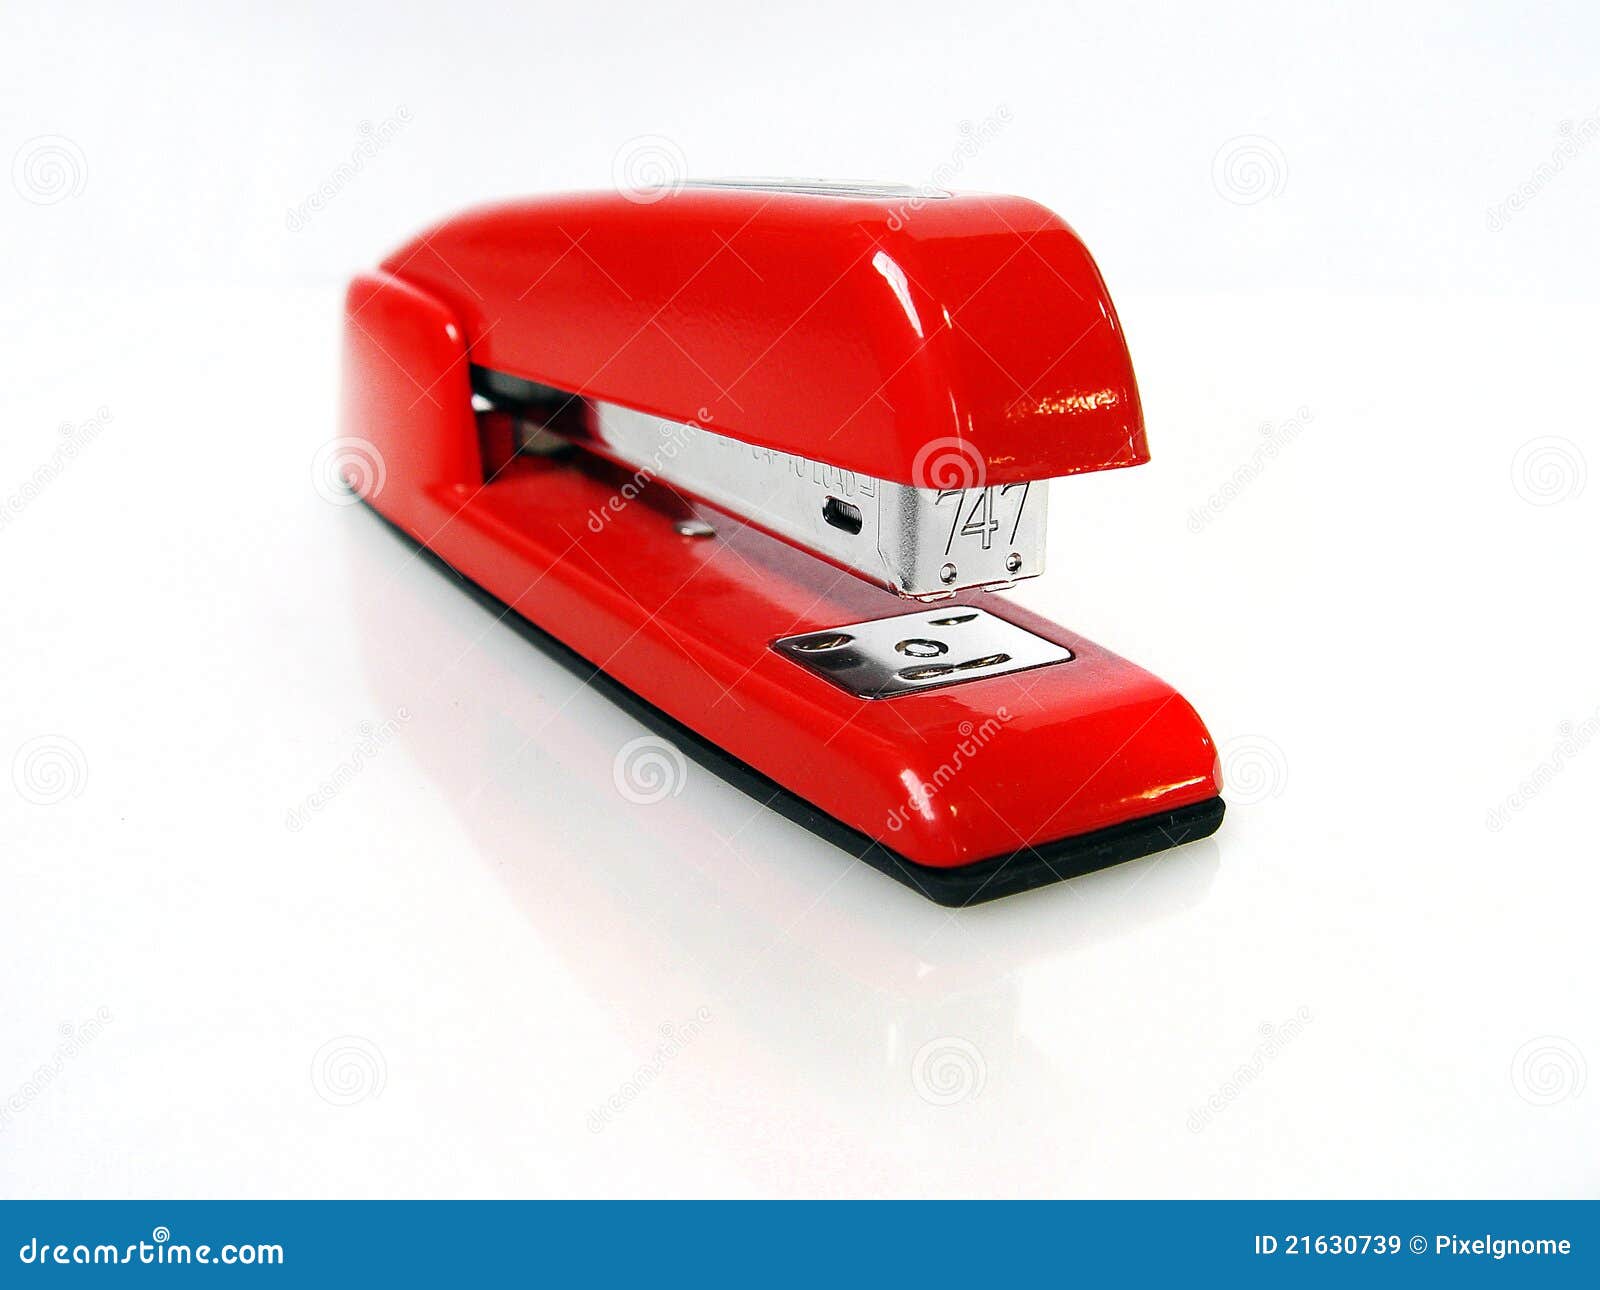 shiny red stapler